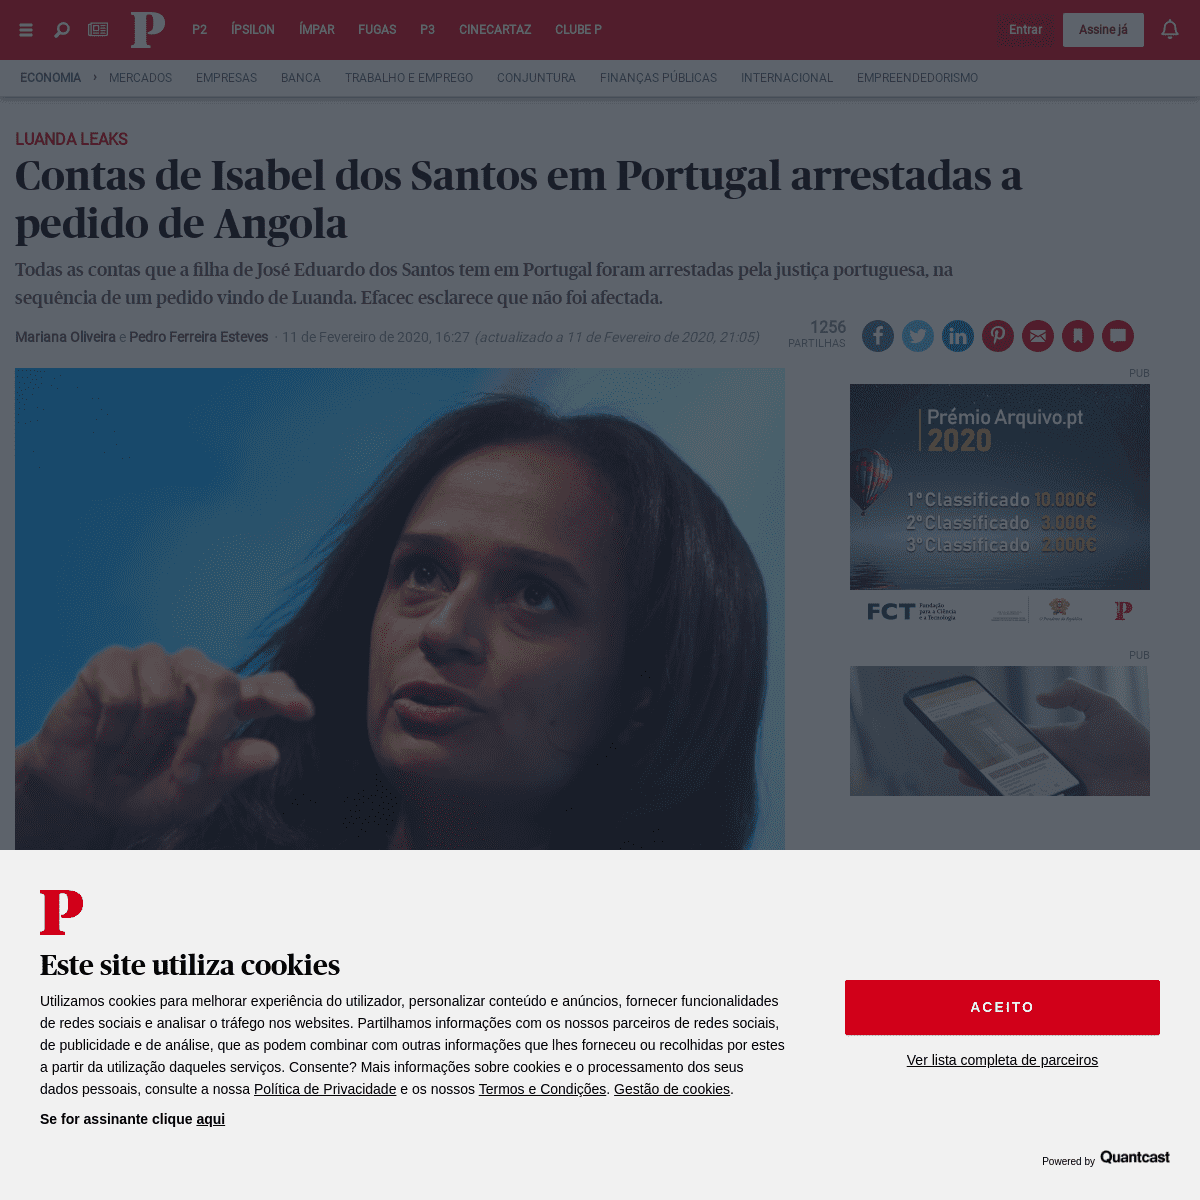 A complete backup of www.publico.pt/2020/02/11/economia/noticia/justica-portuguesa-congela-contas-bancarias-isabel-santos-avanca